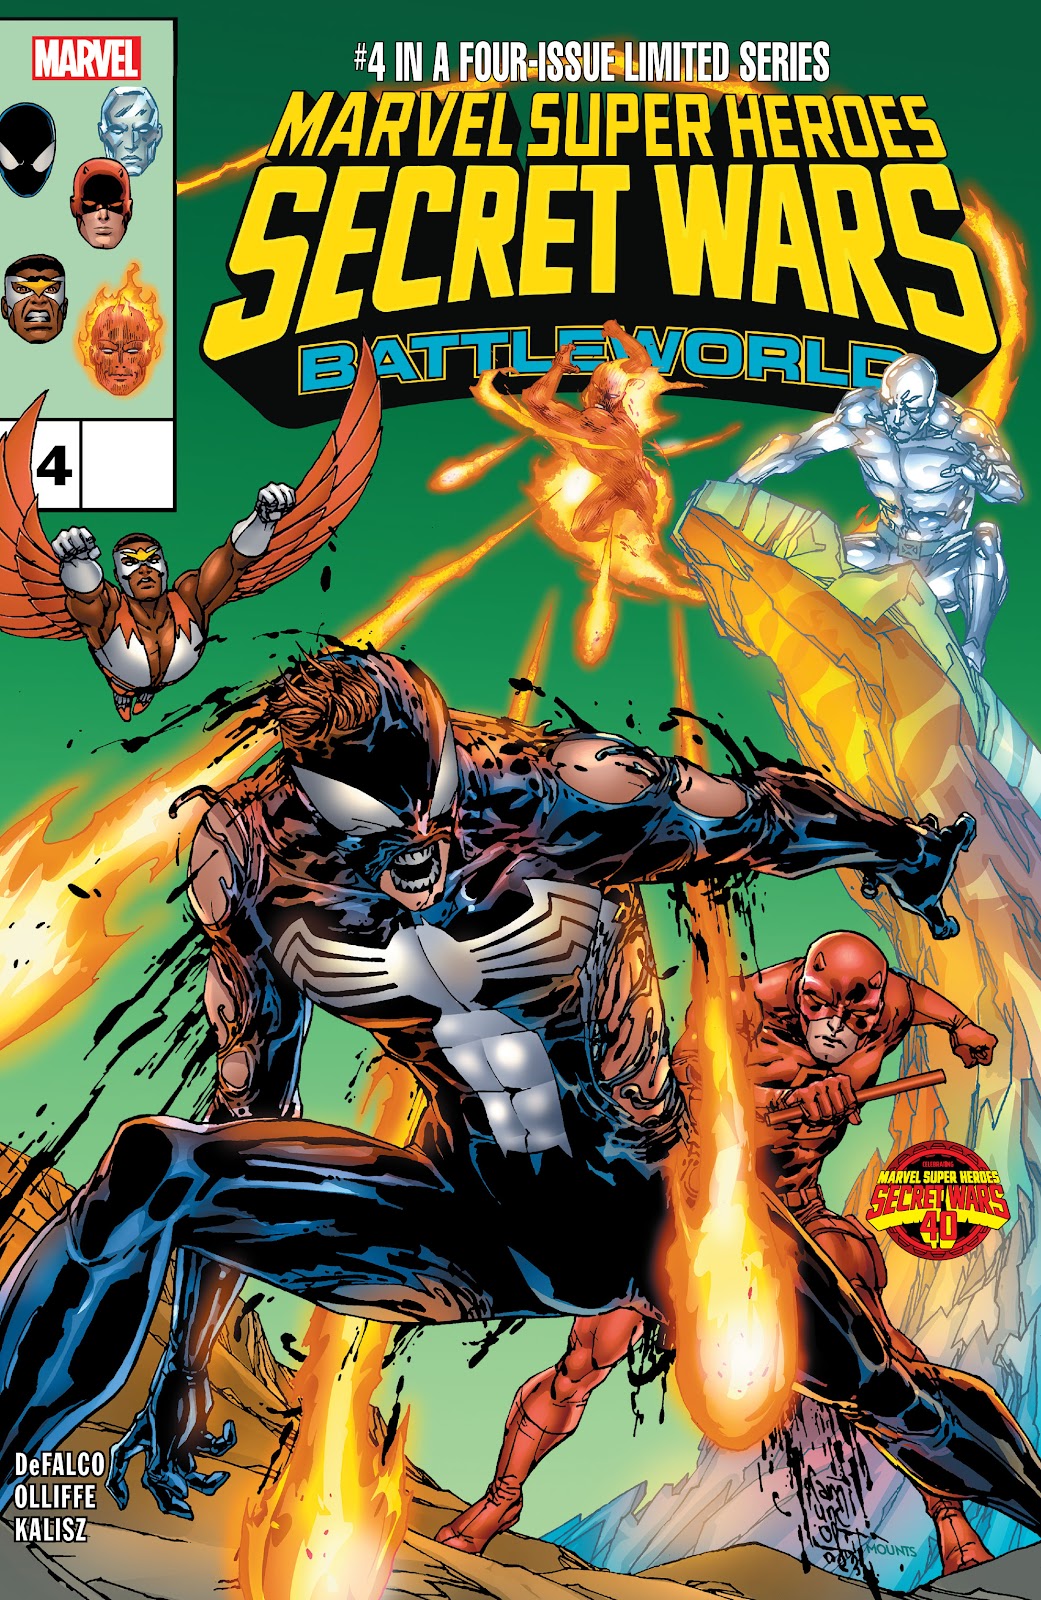 Marvel Super Heroes Secret Wars: Battleworld issue 4 - Page 1